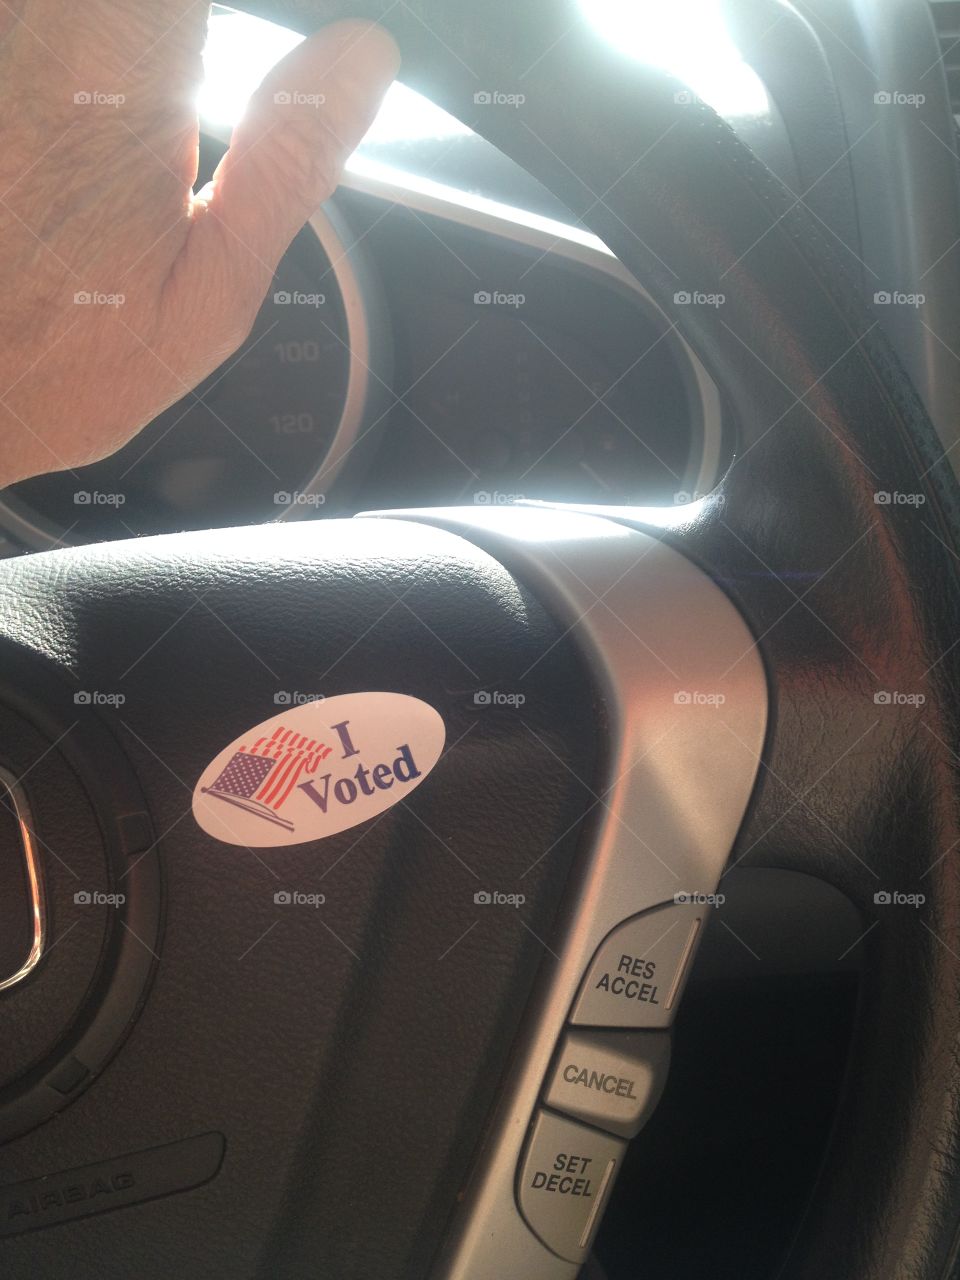 I voted 